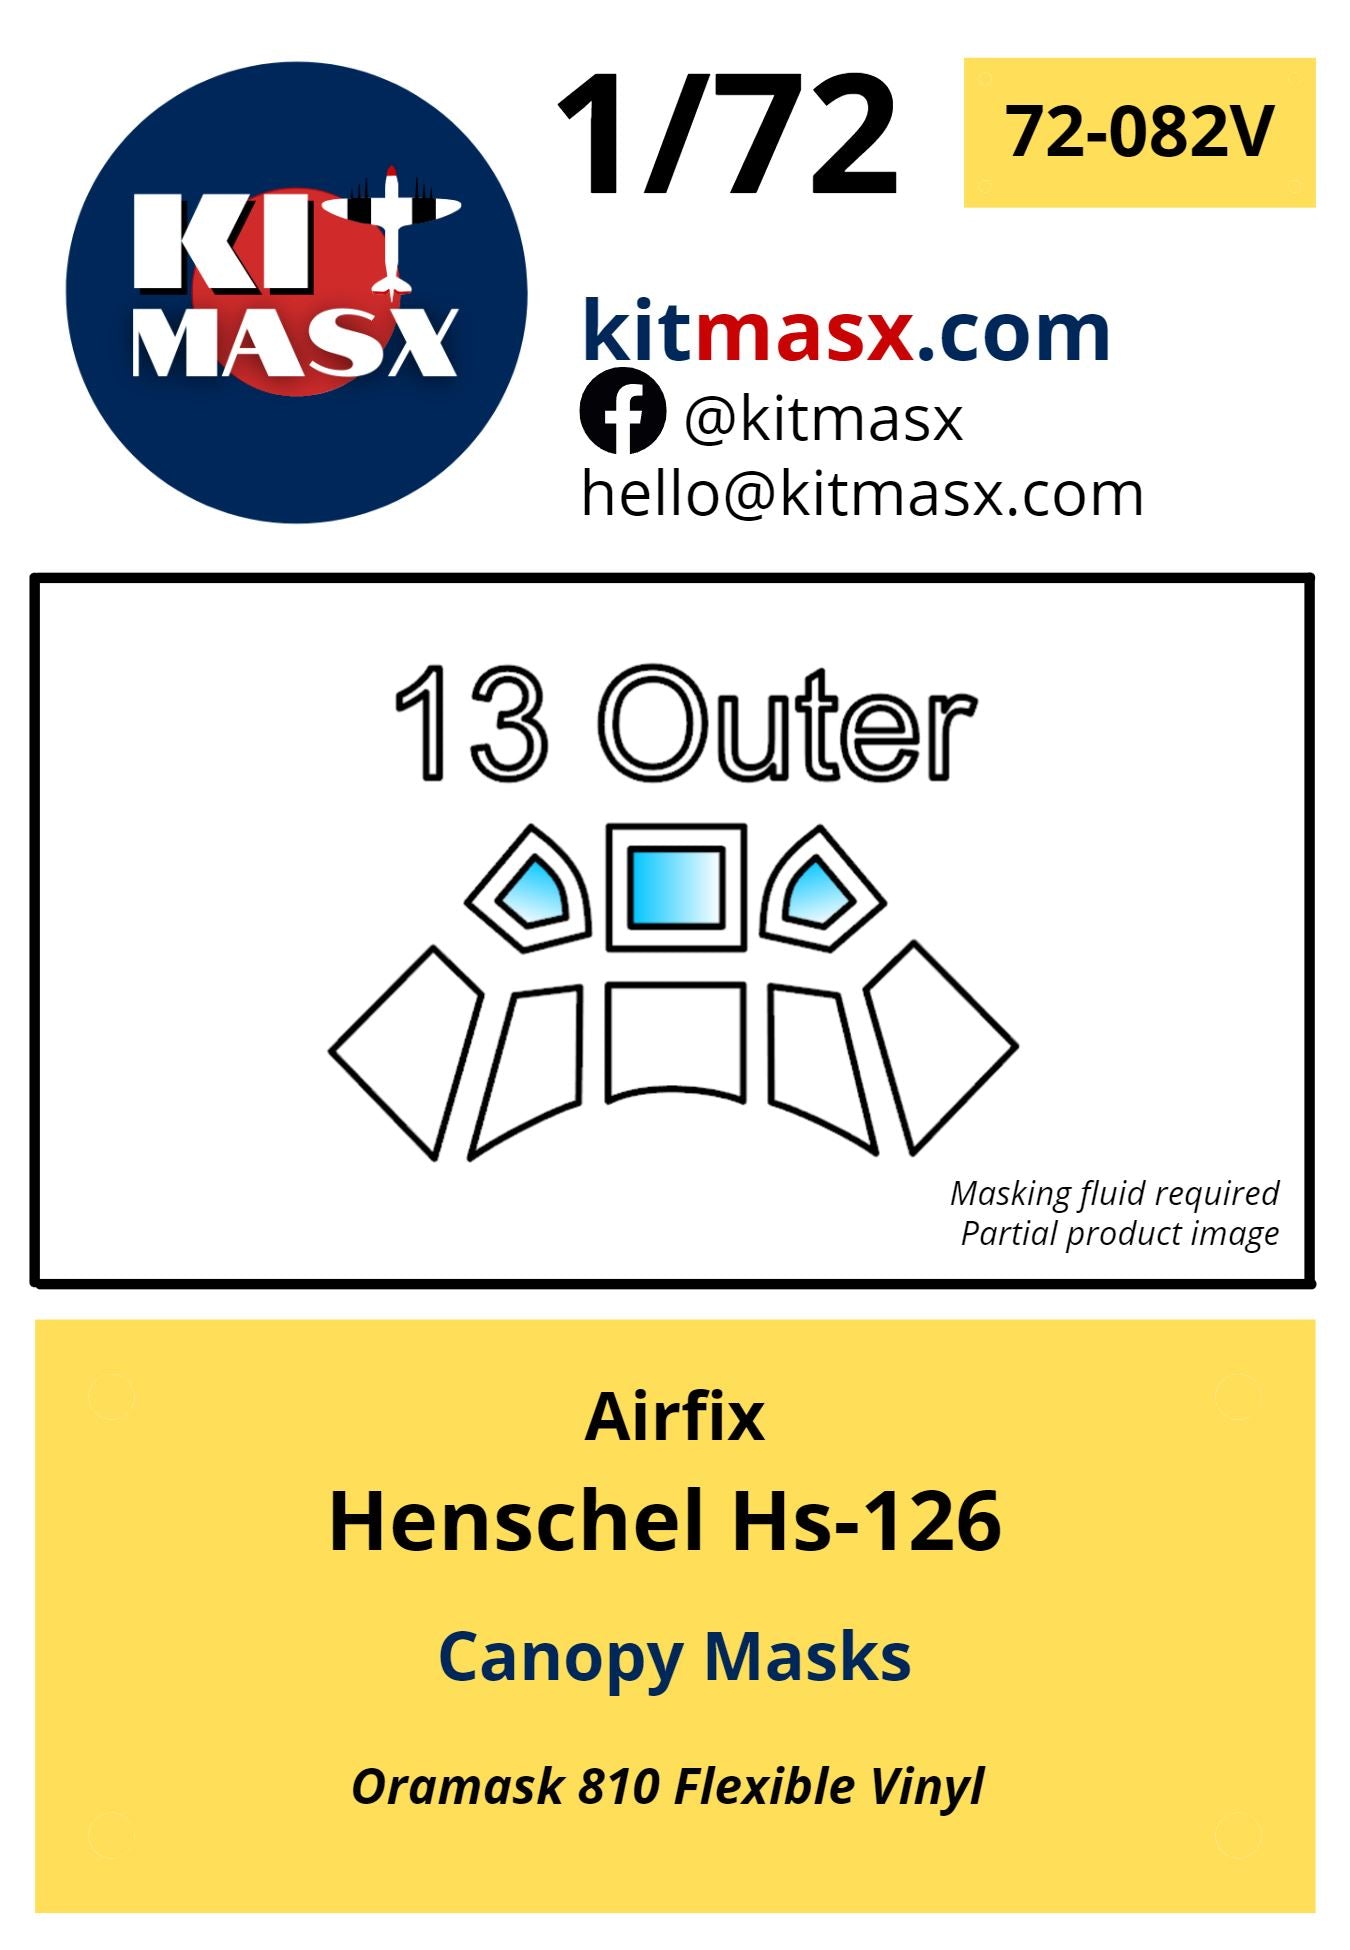 Airfix Henschel Hs-126 Canopy Masks Kit Masx 